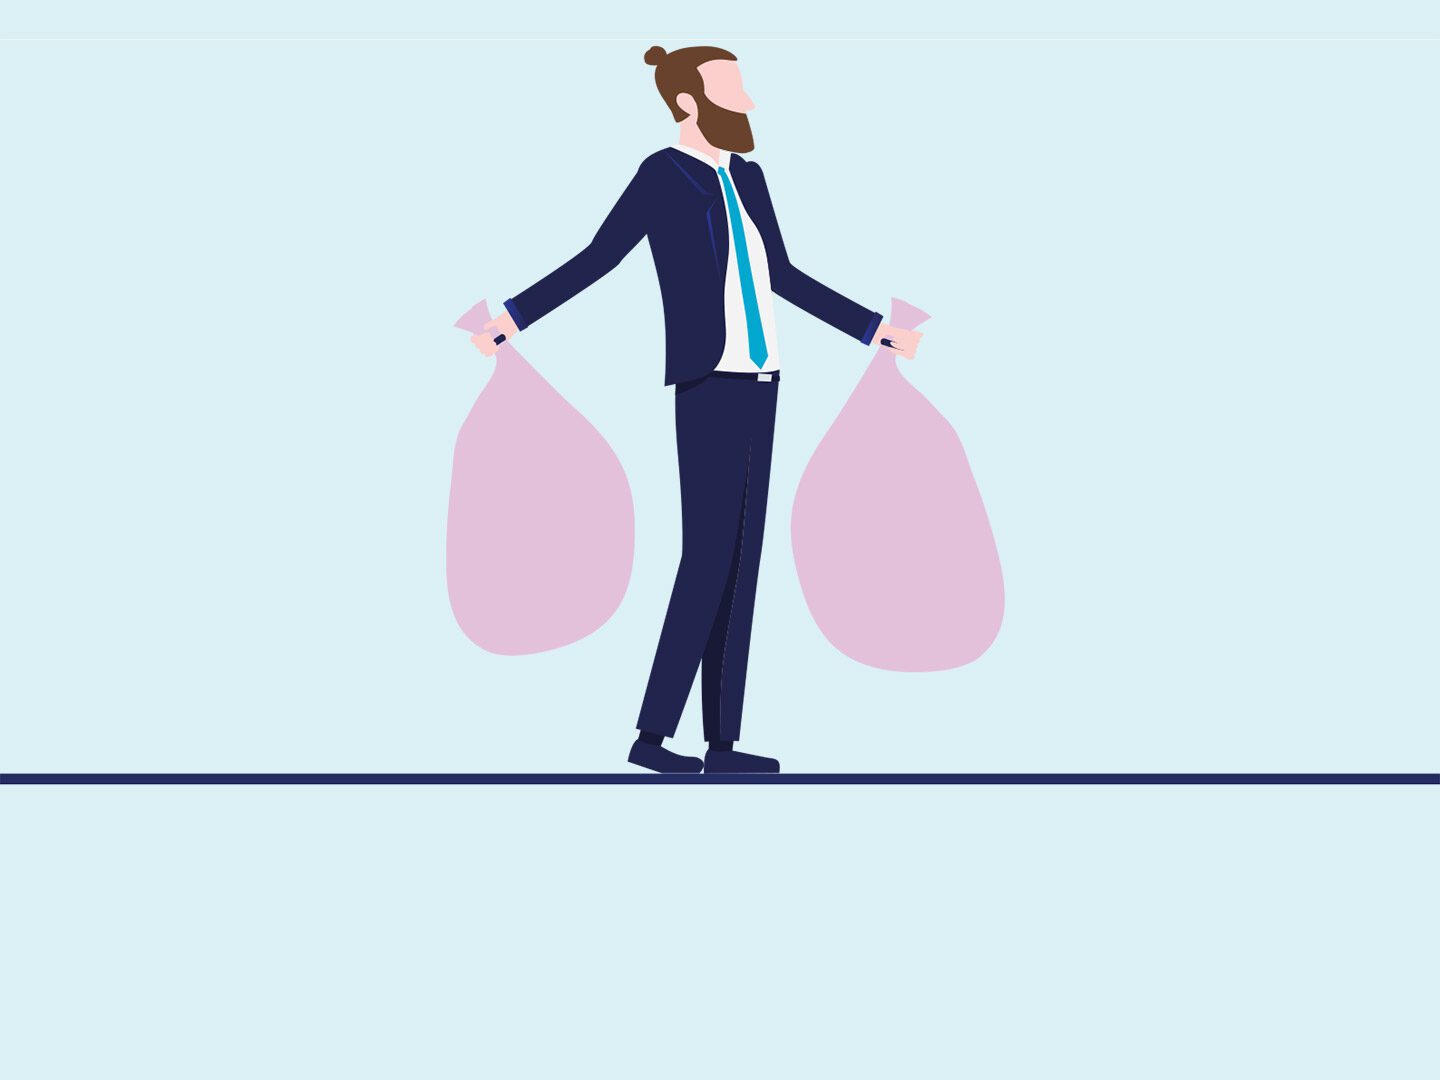 Illustration: Mann im Business-Anzug trägt zwei rosafarbene Säcke in den Händen, die das Unternehmen Cleanhub symbolisieren